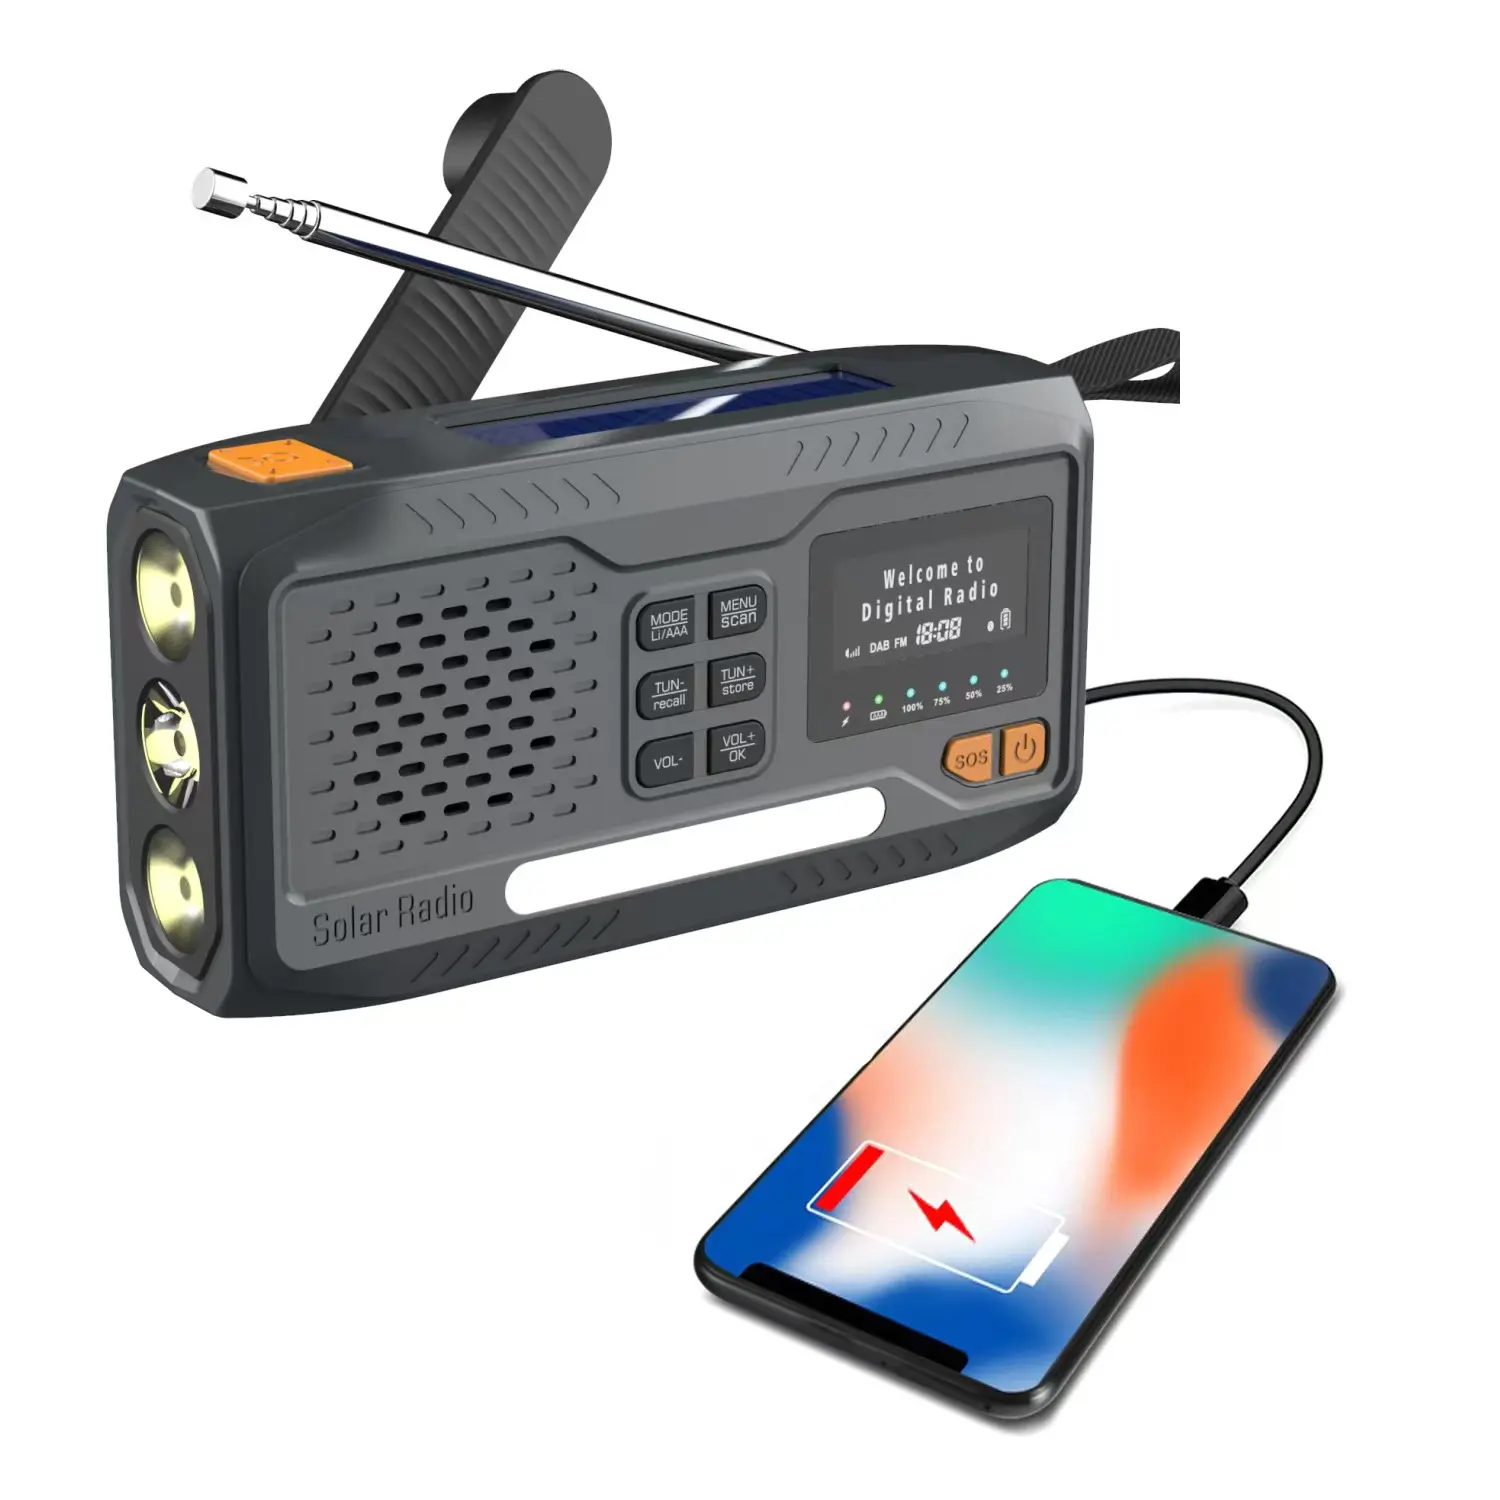 Xách tay mini FM năng lượng mặt trời Dynamo khẩn cấp Crank đài phát thanh kỹ thuật số thoa đài phát thanh với tai nghe, 3 chế độ đèn pin, phí điện thoại